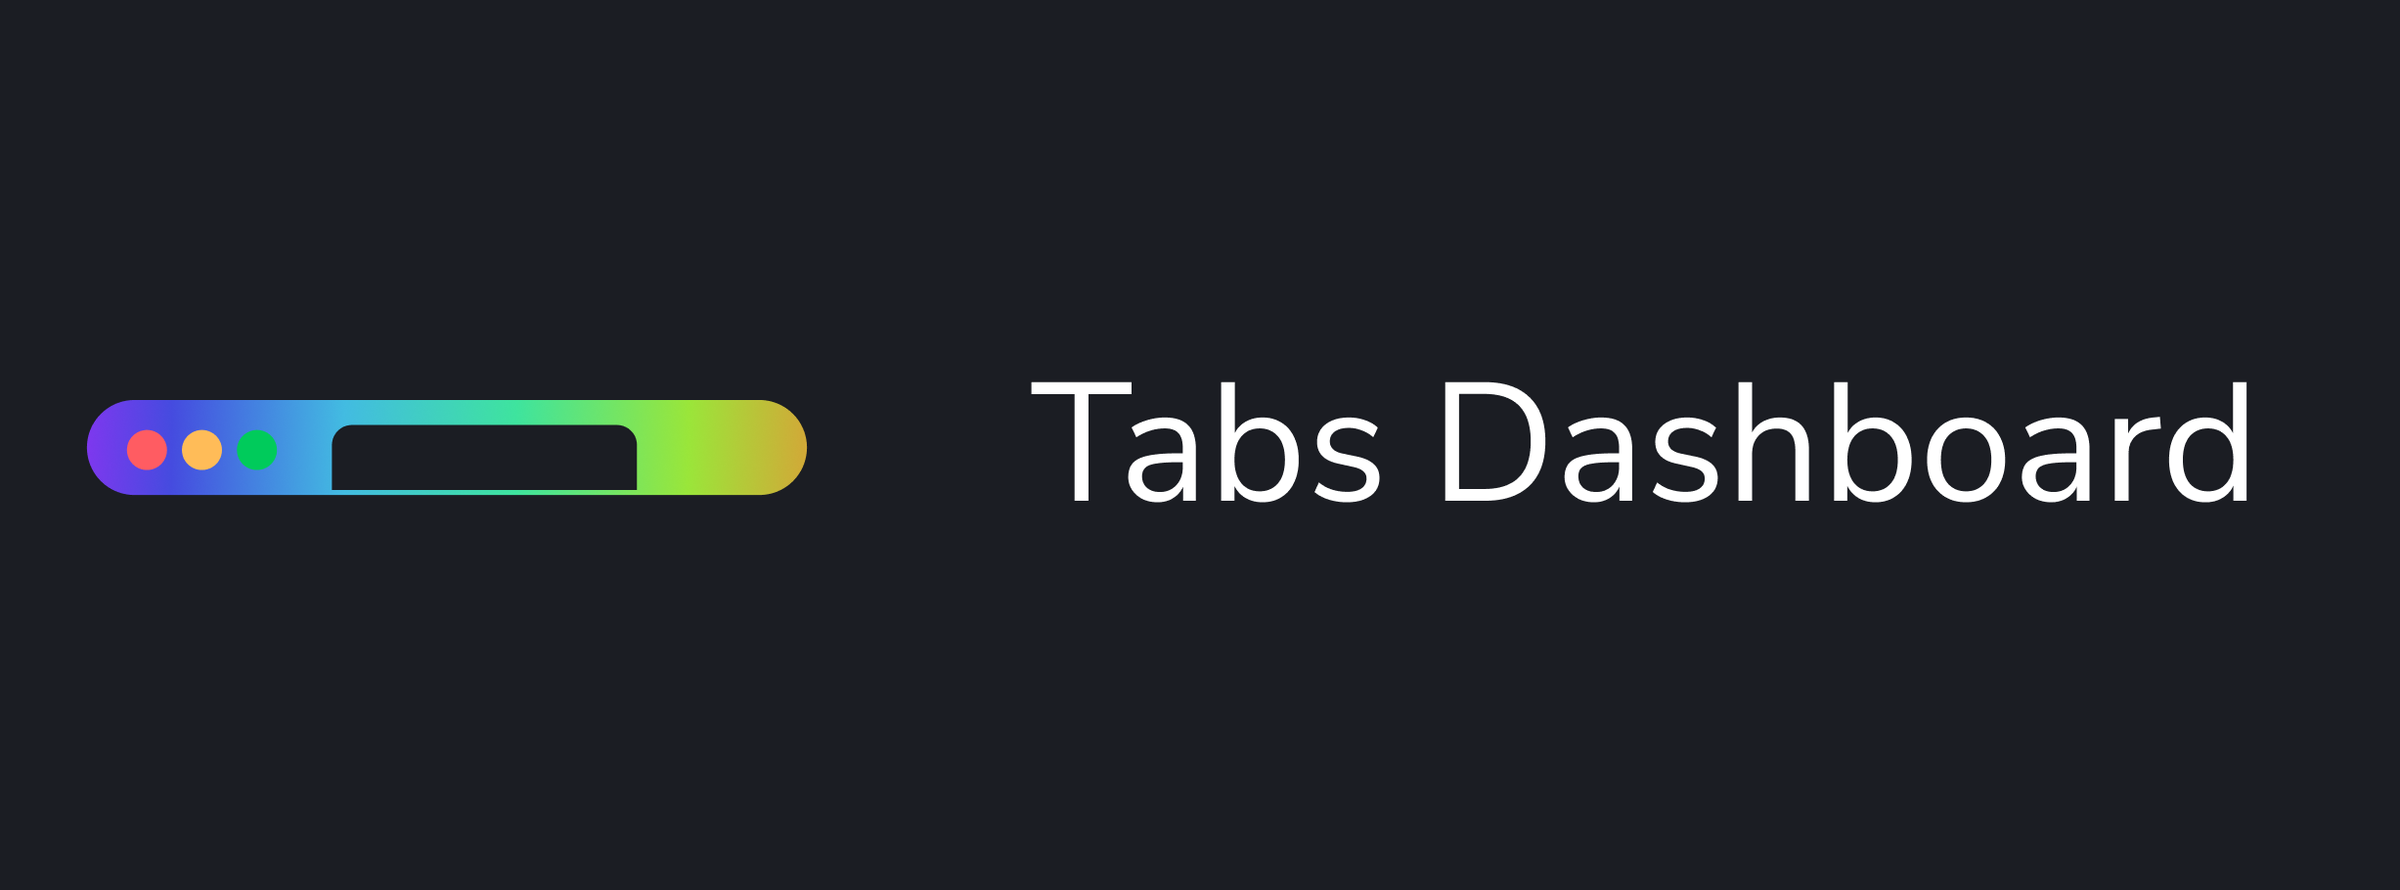 Tabs Dashboard